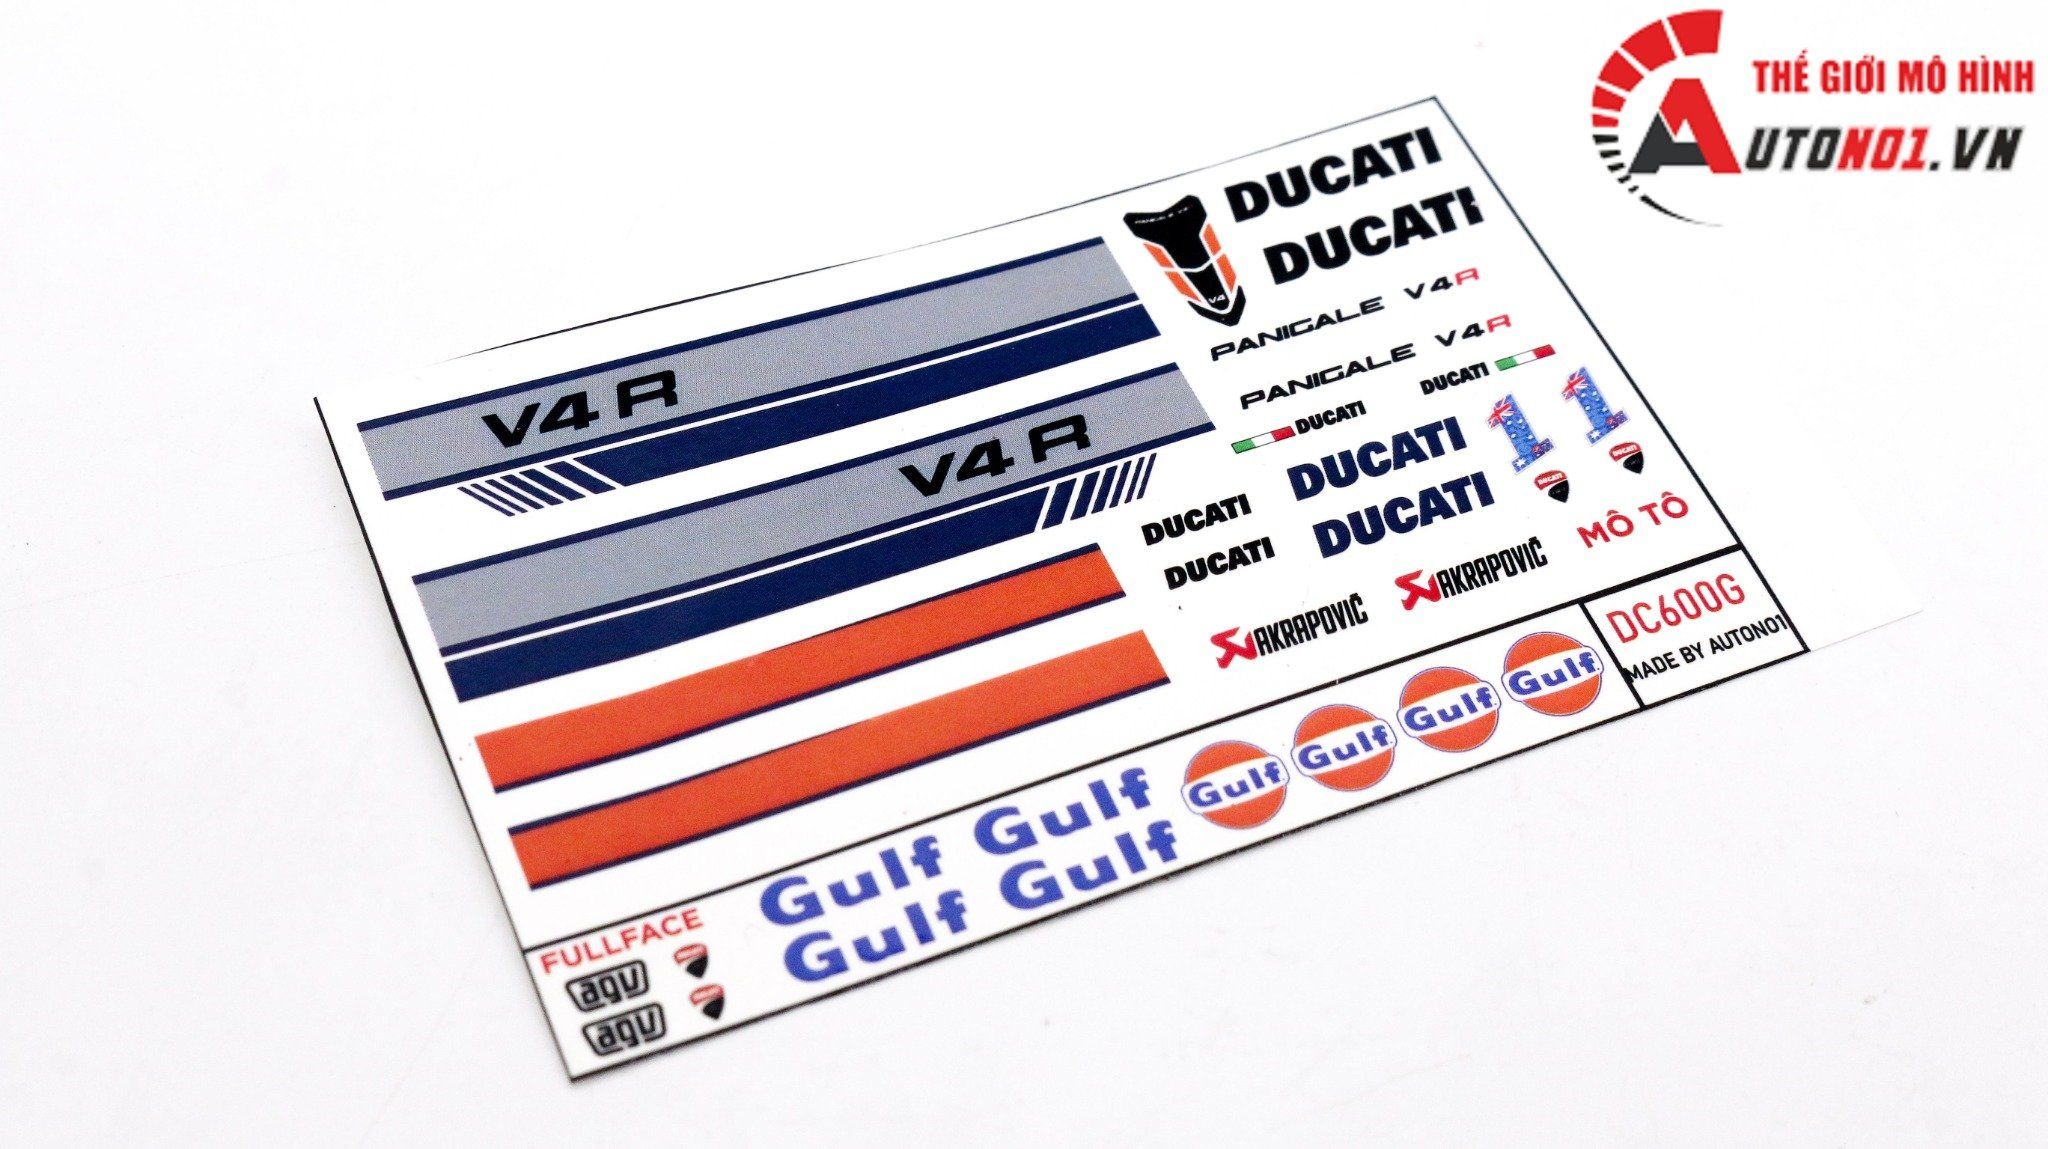  Decal nước độ Ducati Panigale V4S Gulf - Decal fullface Gulf Ducati tỉ lệ 1:12 Autono1 DC600g 